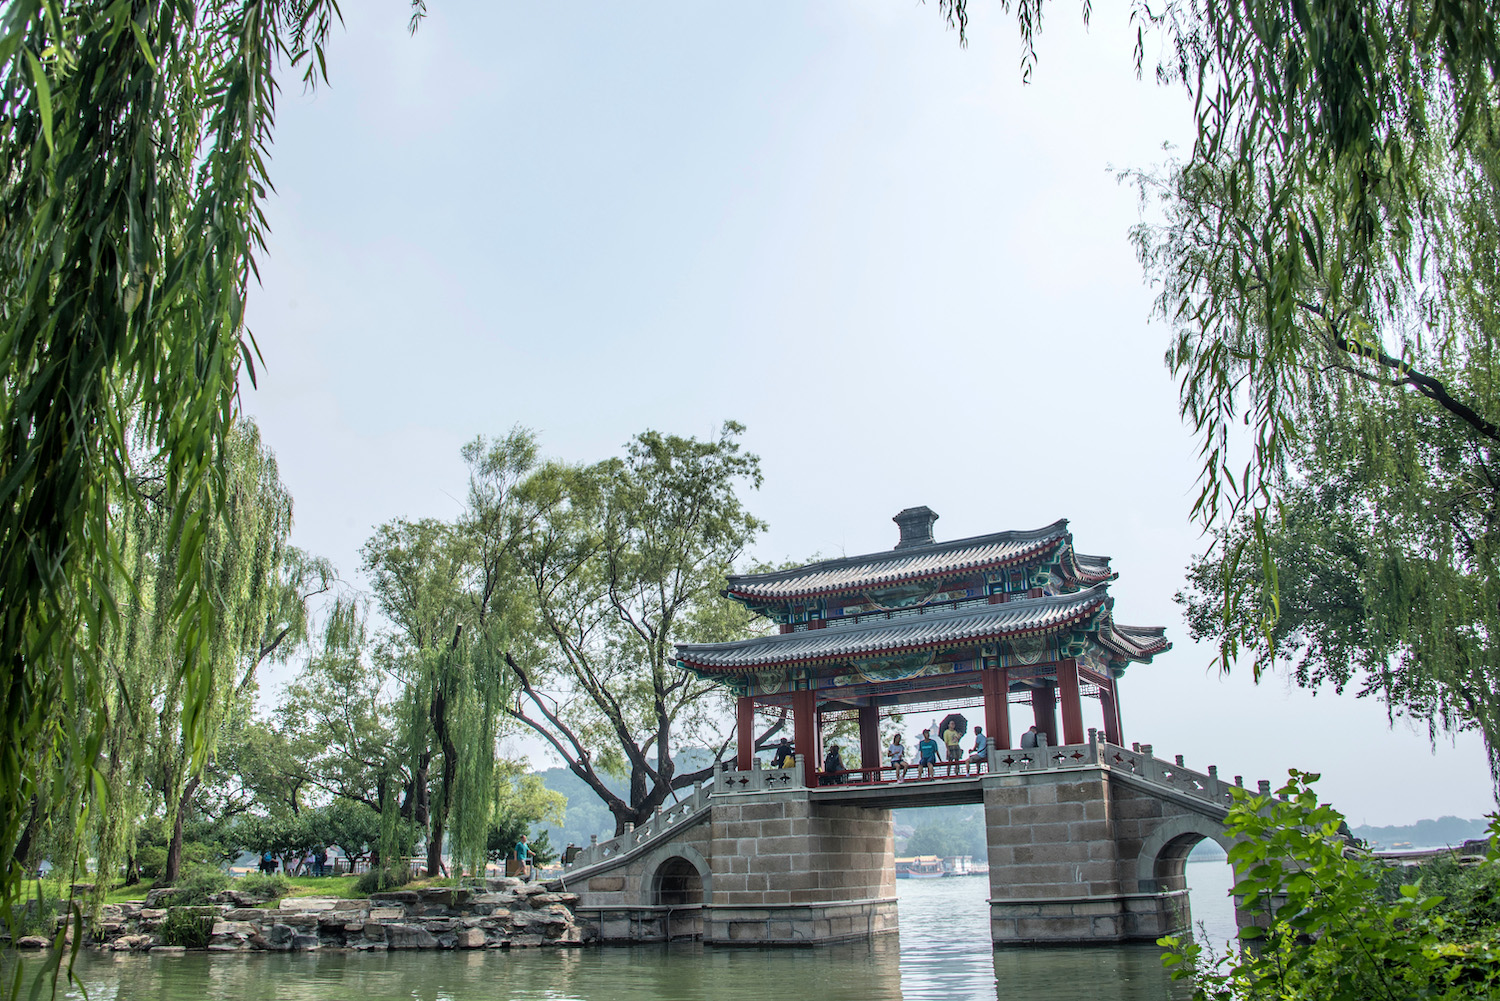 Visiting China's Summer Palace